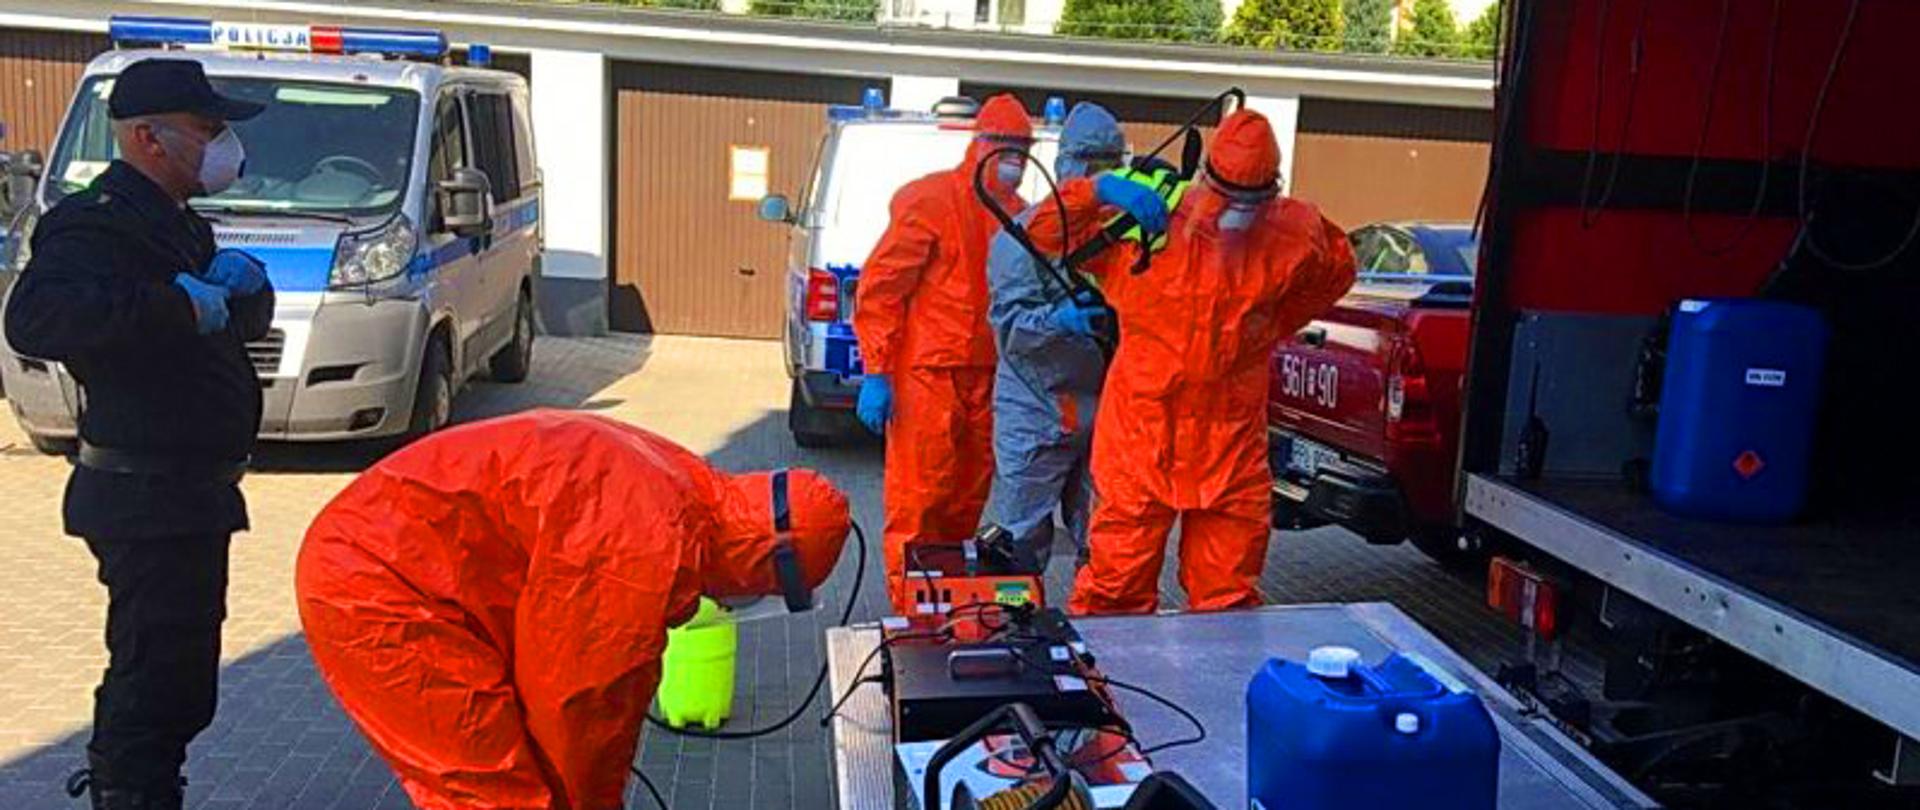 Strażacy w nieustającej walce z koronawirusem – na zdjęciu strażacy w szczelnych biochemicznie kombinezonach 